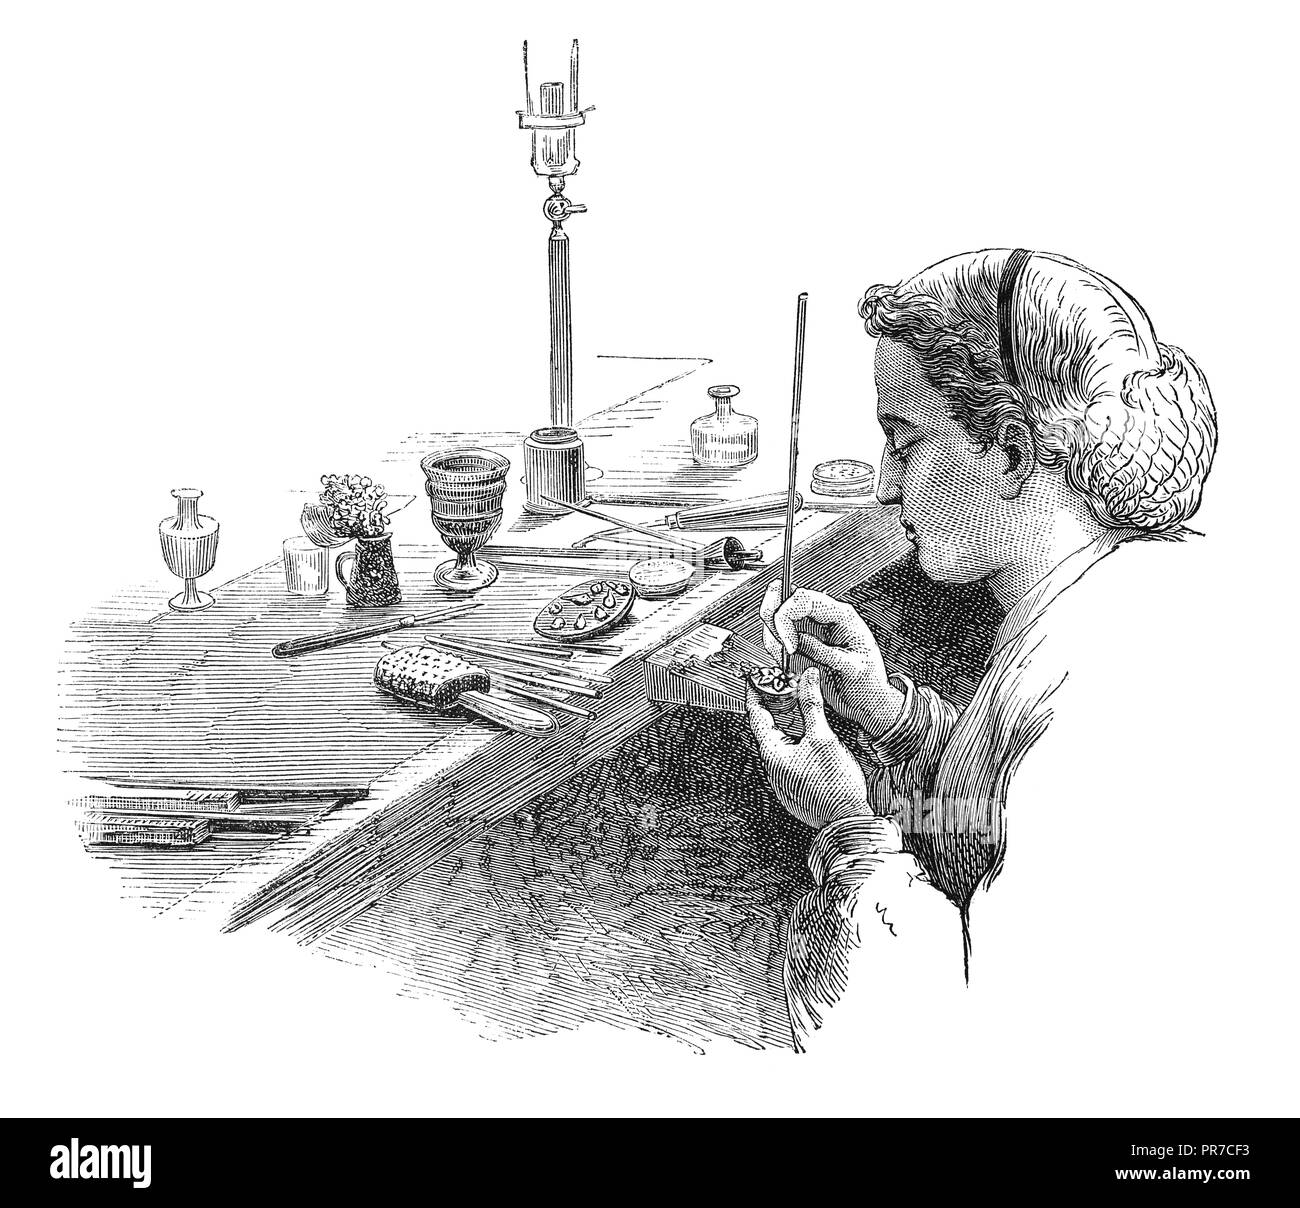 Illustration des Polierens aus dem 19. Jahrhundert - häufiges Arbeiten in der Schmuckherstellung. Veröffentlicht in 'The Practical Magazine, an Illustrated Cyclopedia Stockfoto